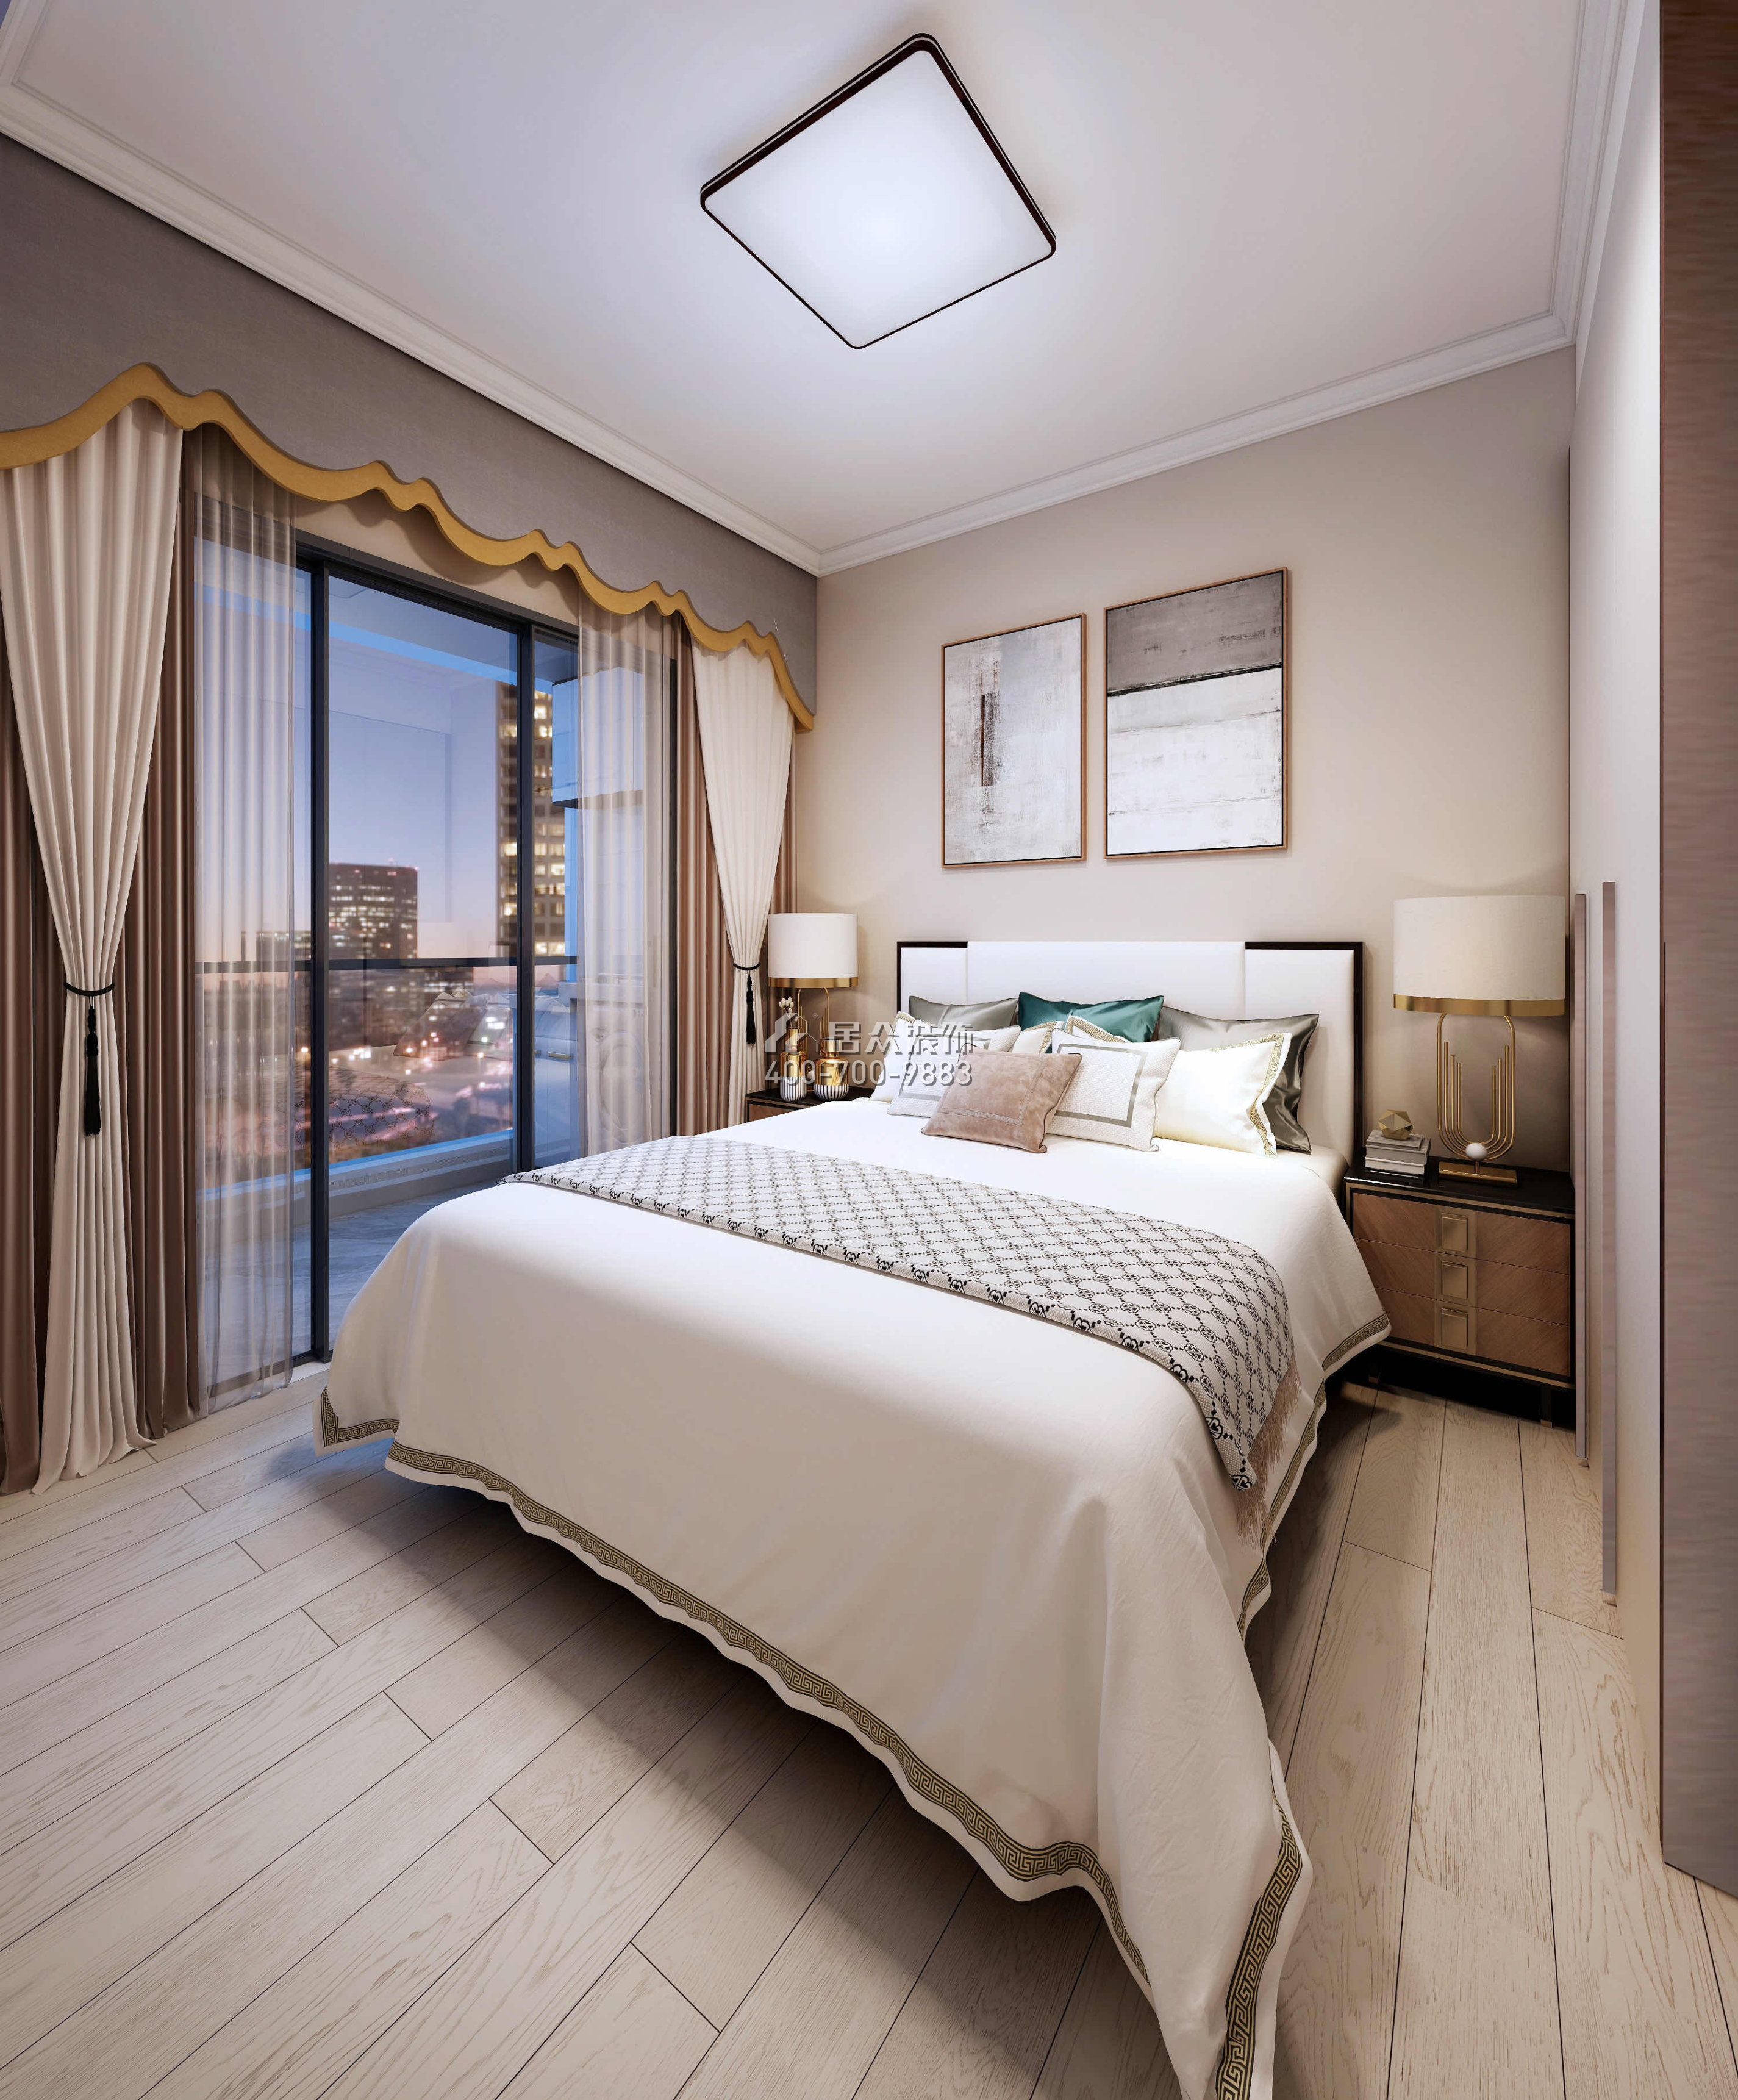 勤誠達正大城103平方米現代簡約風格平層戶型臥室裝修效果圖